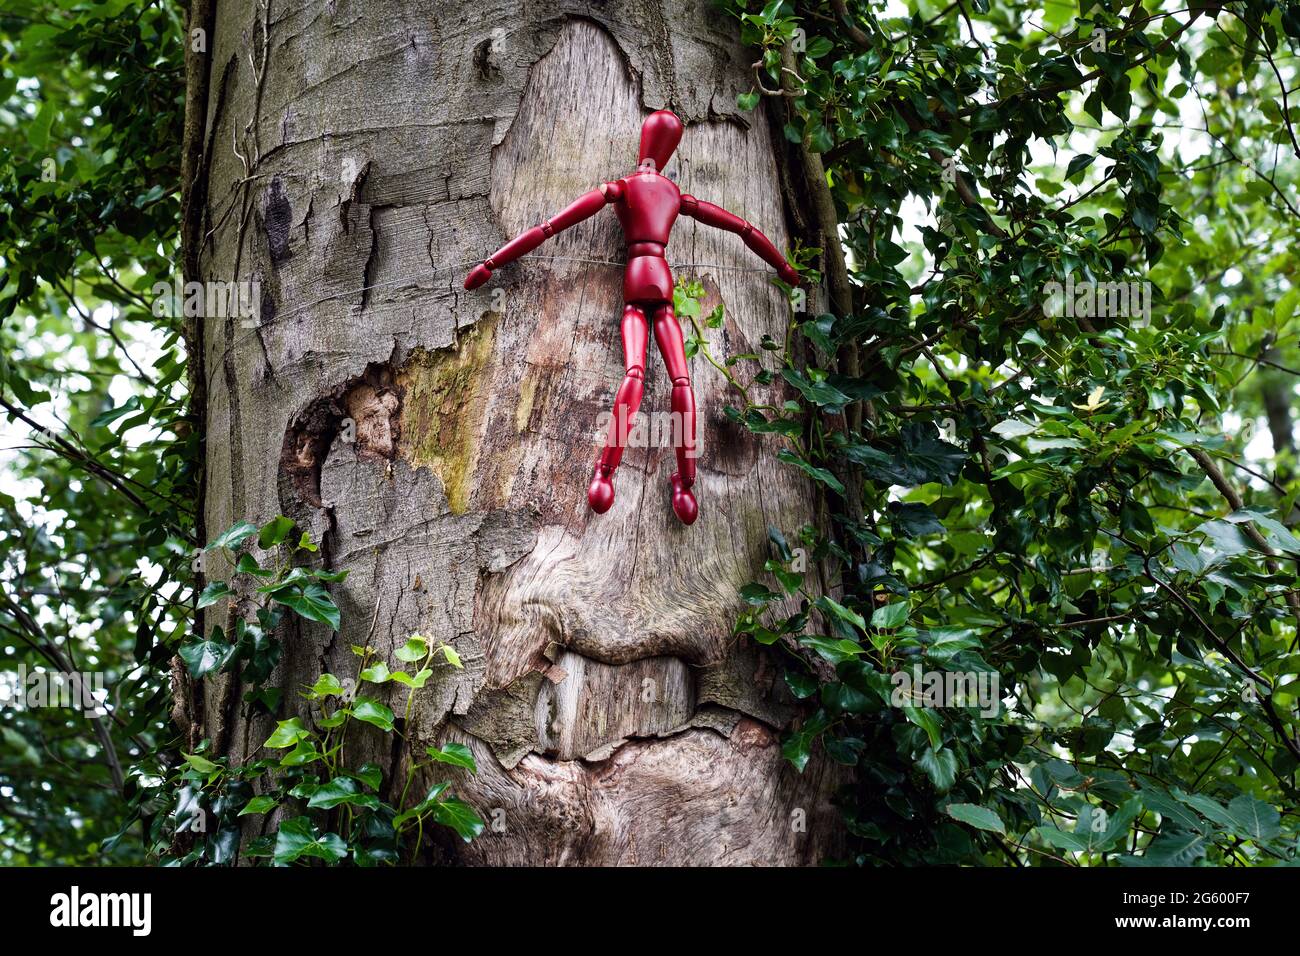 Rote Holzfiguren sind in einem deutschen Wald an Bäume gebunden. Mit dieser Kampagne macht ein Künstler auf den Umgang mit dem Wald aufmerksam. Die in Form eines Kreuzes angeordneten Puppen symbolisieren den sterbenden Wald. --- Rote Holzfiguren sind an Bäumen in einem Wald zwischen Herdecke und Wetter a.d.Ruhr gebunden. Mit dieser Aktion macht der Künstler Knut Waschkau auf den Umgang mit dem Wald aufmerksam. Die in Kreuzesform angeordneten Gliederpuppen stehen symbolisch für das Sterben der Wälder. Stockfoto